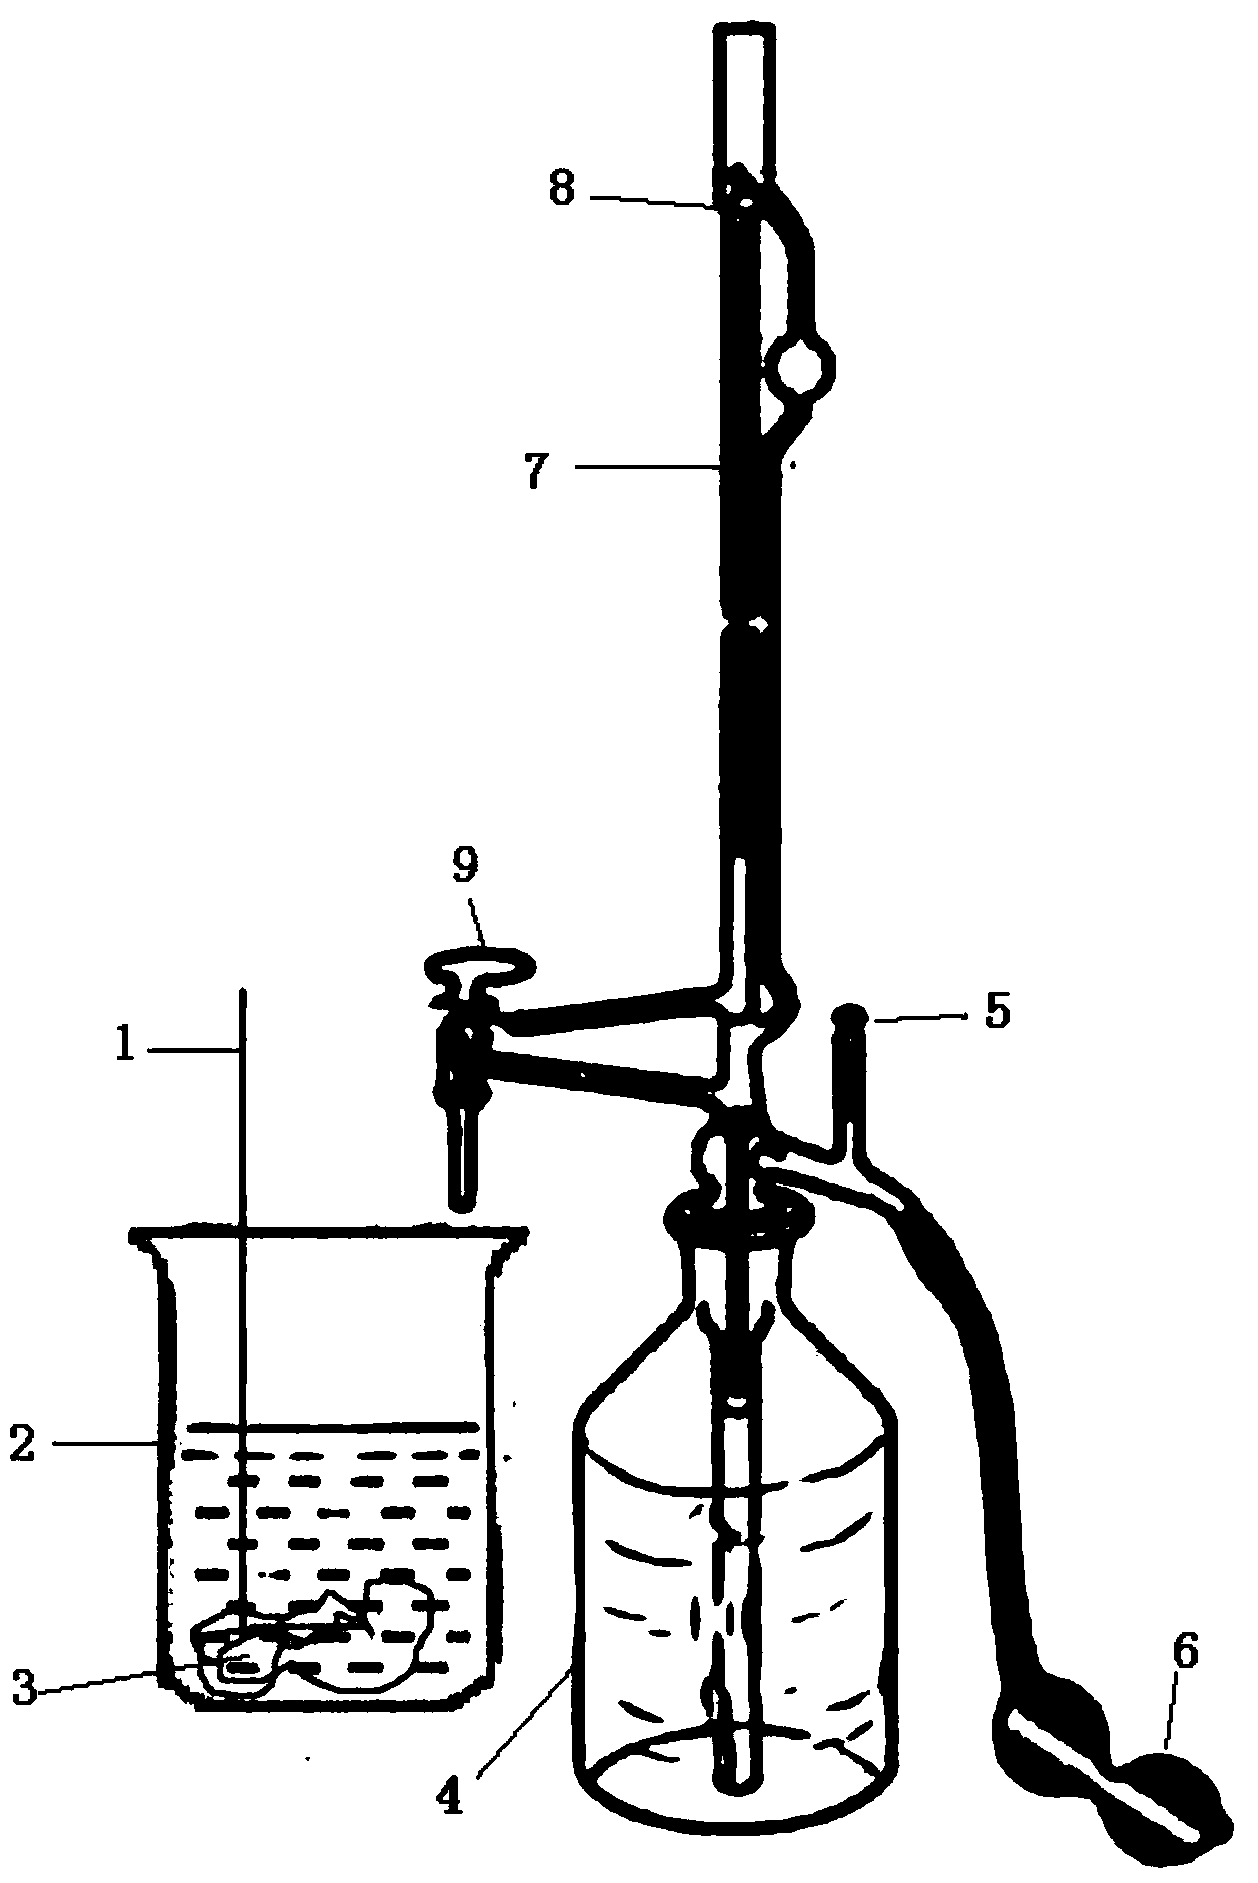 Method for measuring volume of catalytic converter carrier